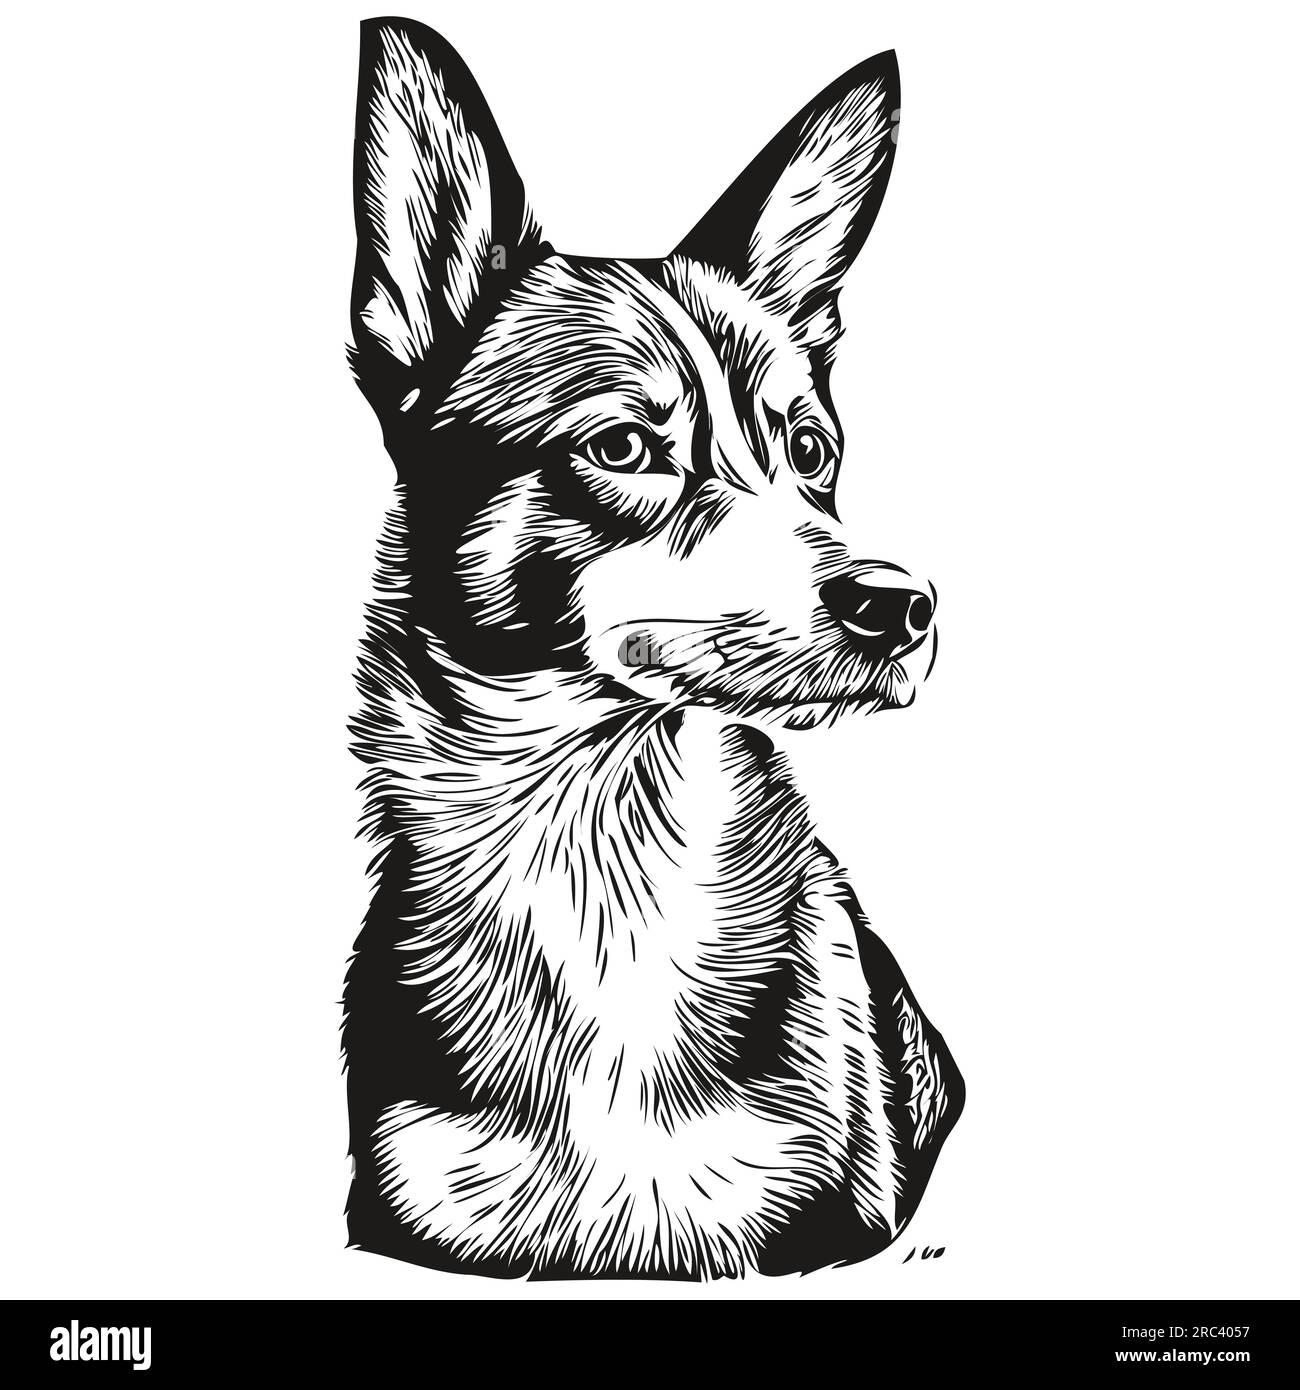 Dessin au trait de race de chien Basenji, clip art animal dessin à la main vecteur noir et blanc Illustration de Vecteur